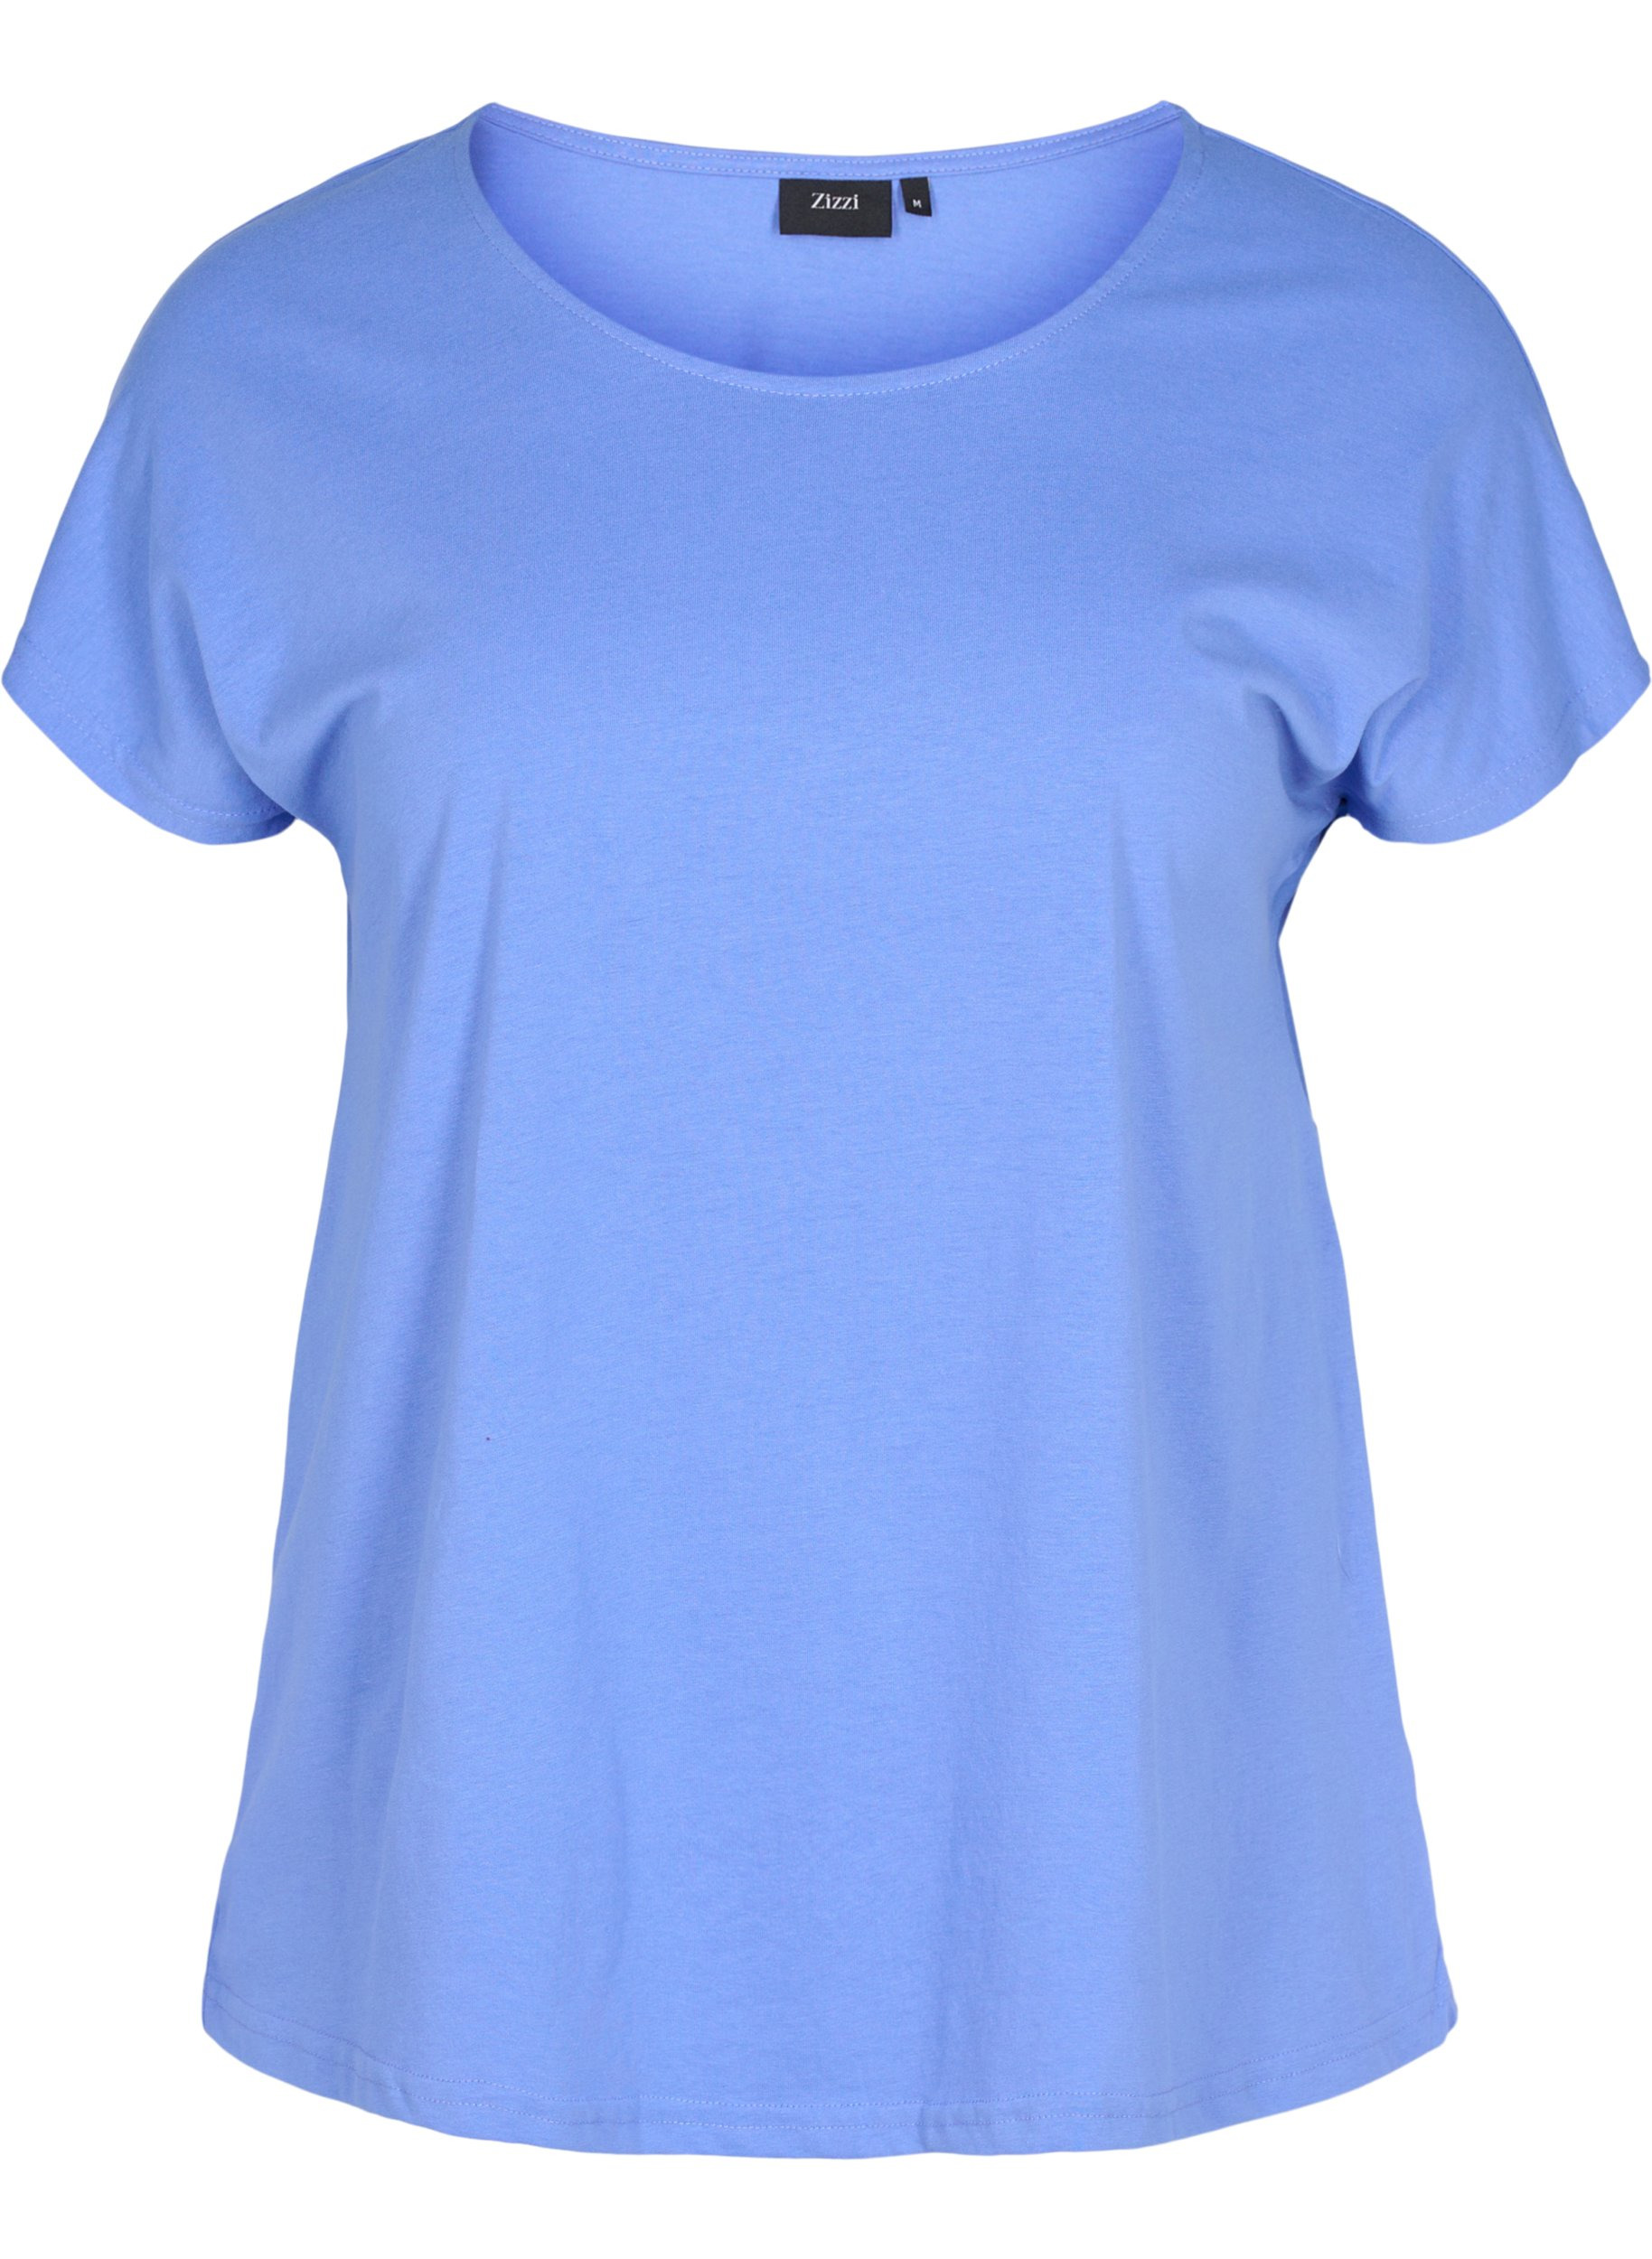 Cotton mix t-shirt, Ultramarine